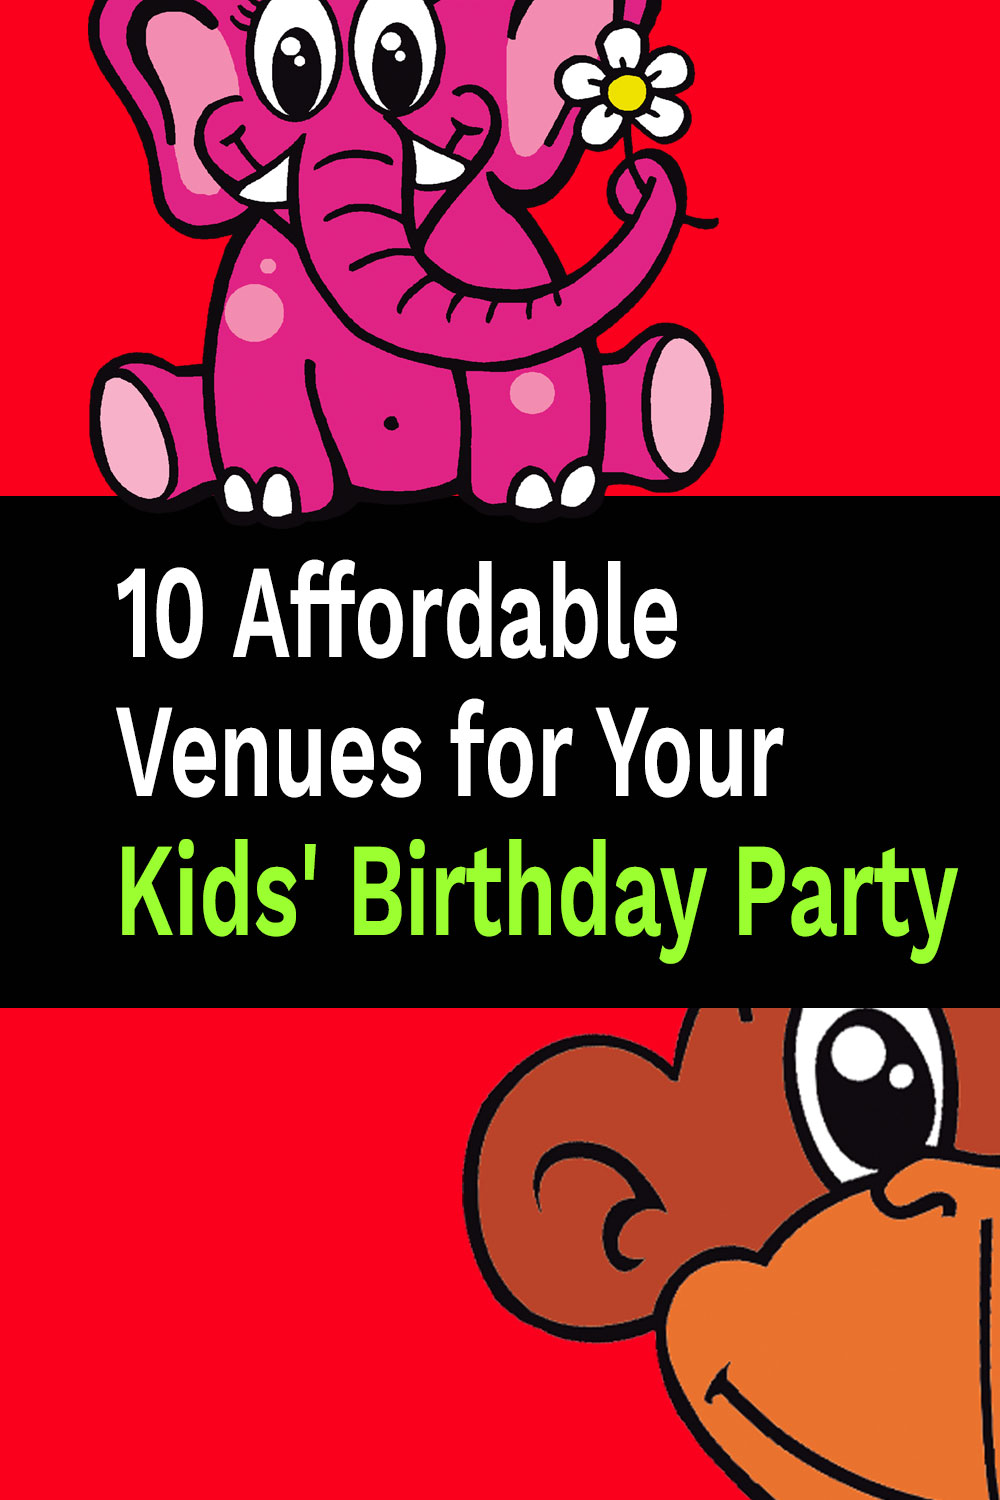 10 lieux abordables pour la fête d’anniversaire de vos enfants